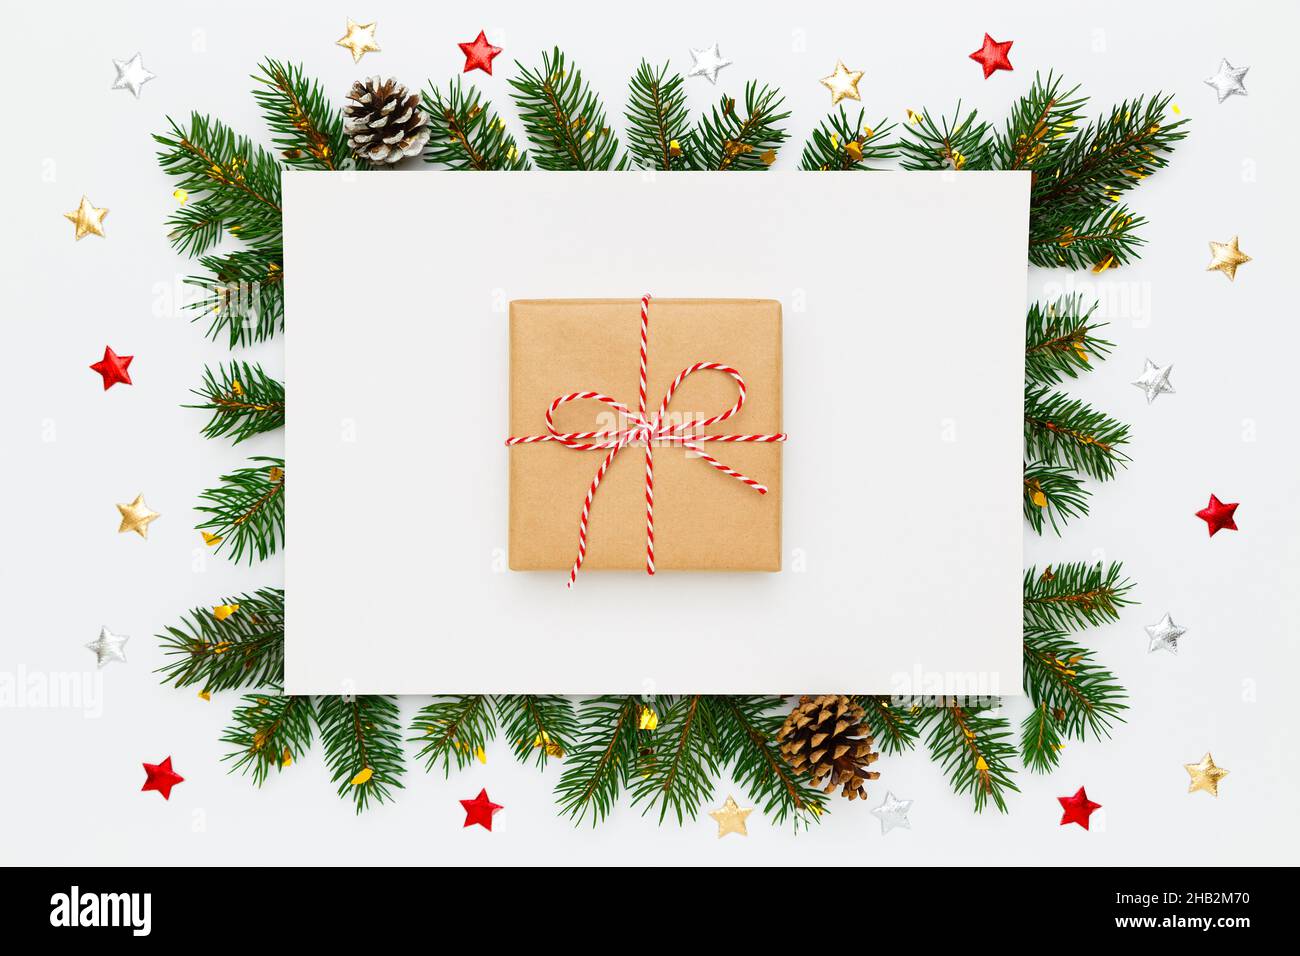 Natale, Capodanno. Carta bianca bianca bianca bianca con regalo di Natale in carta artigianale al centro, in cornice di rami di abete naturale e pino Foto Stock